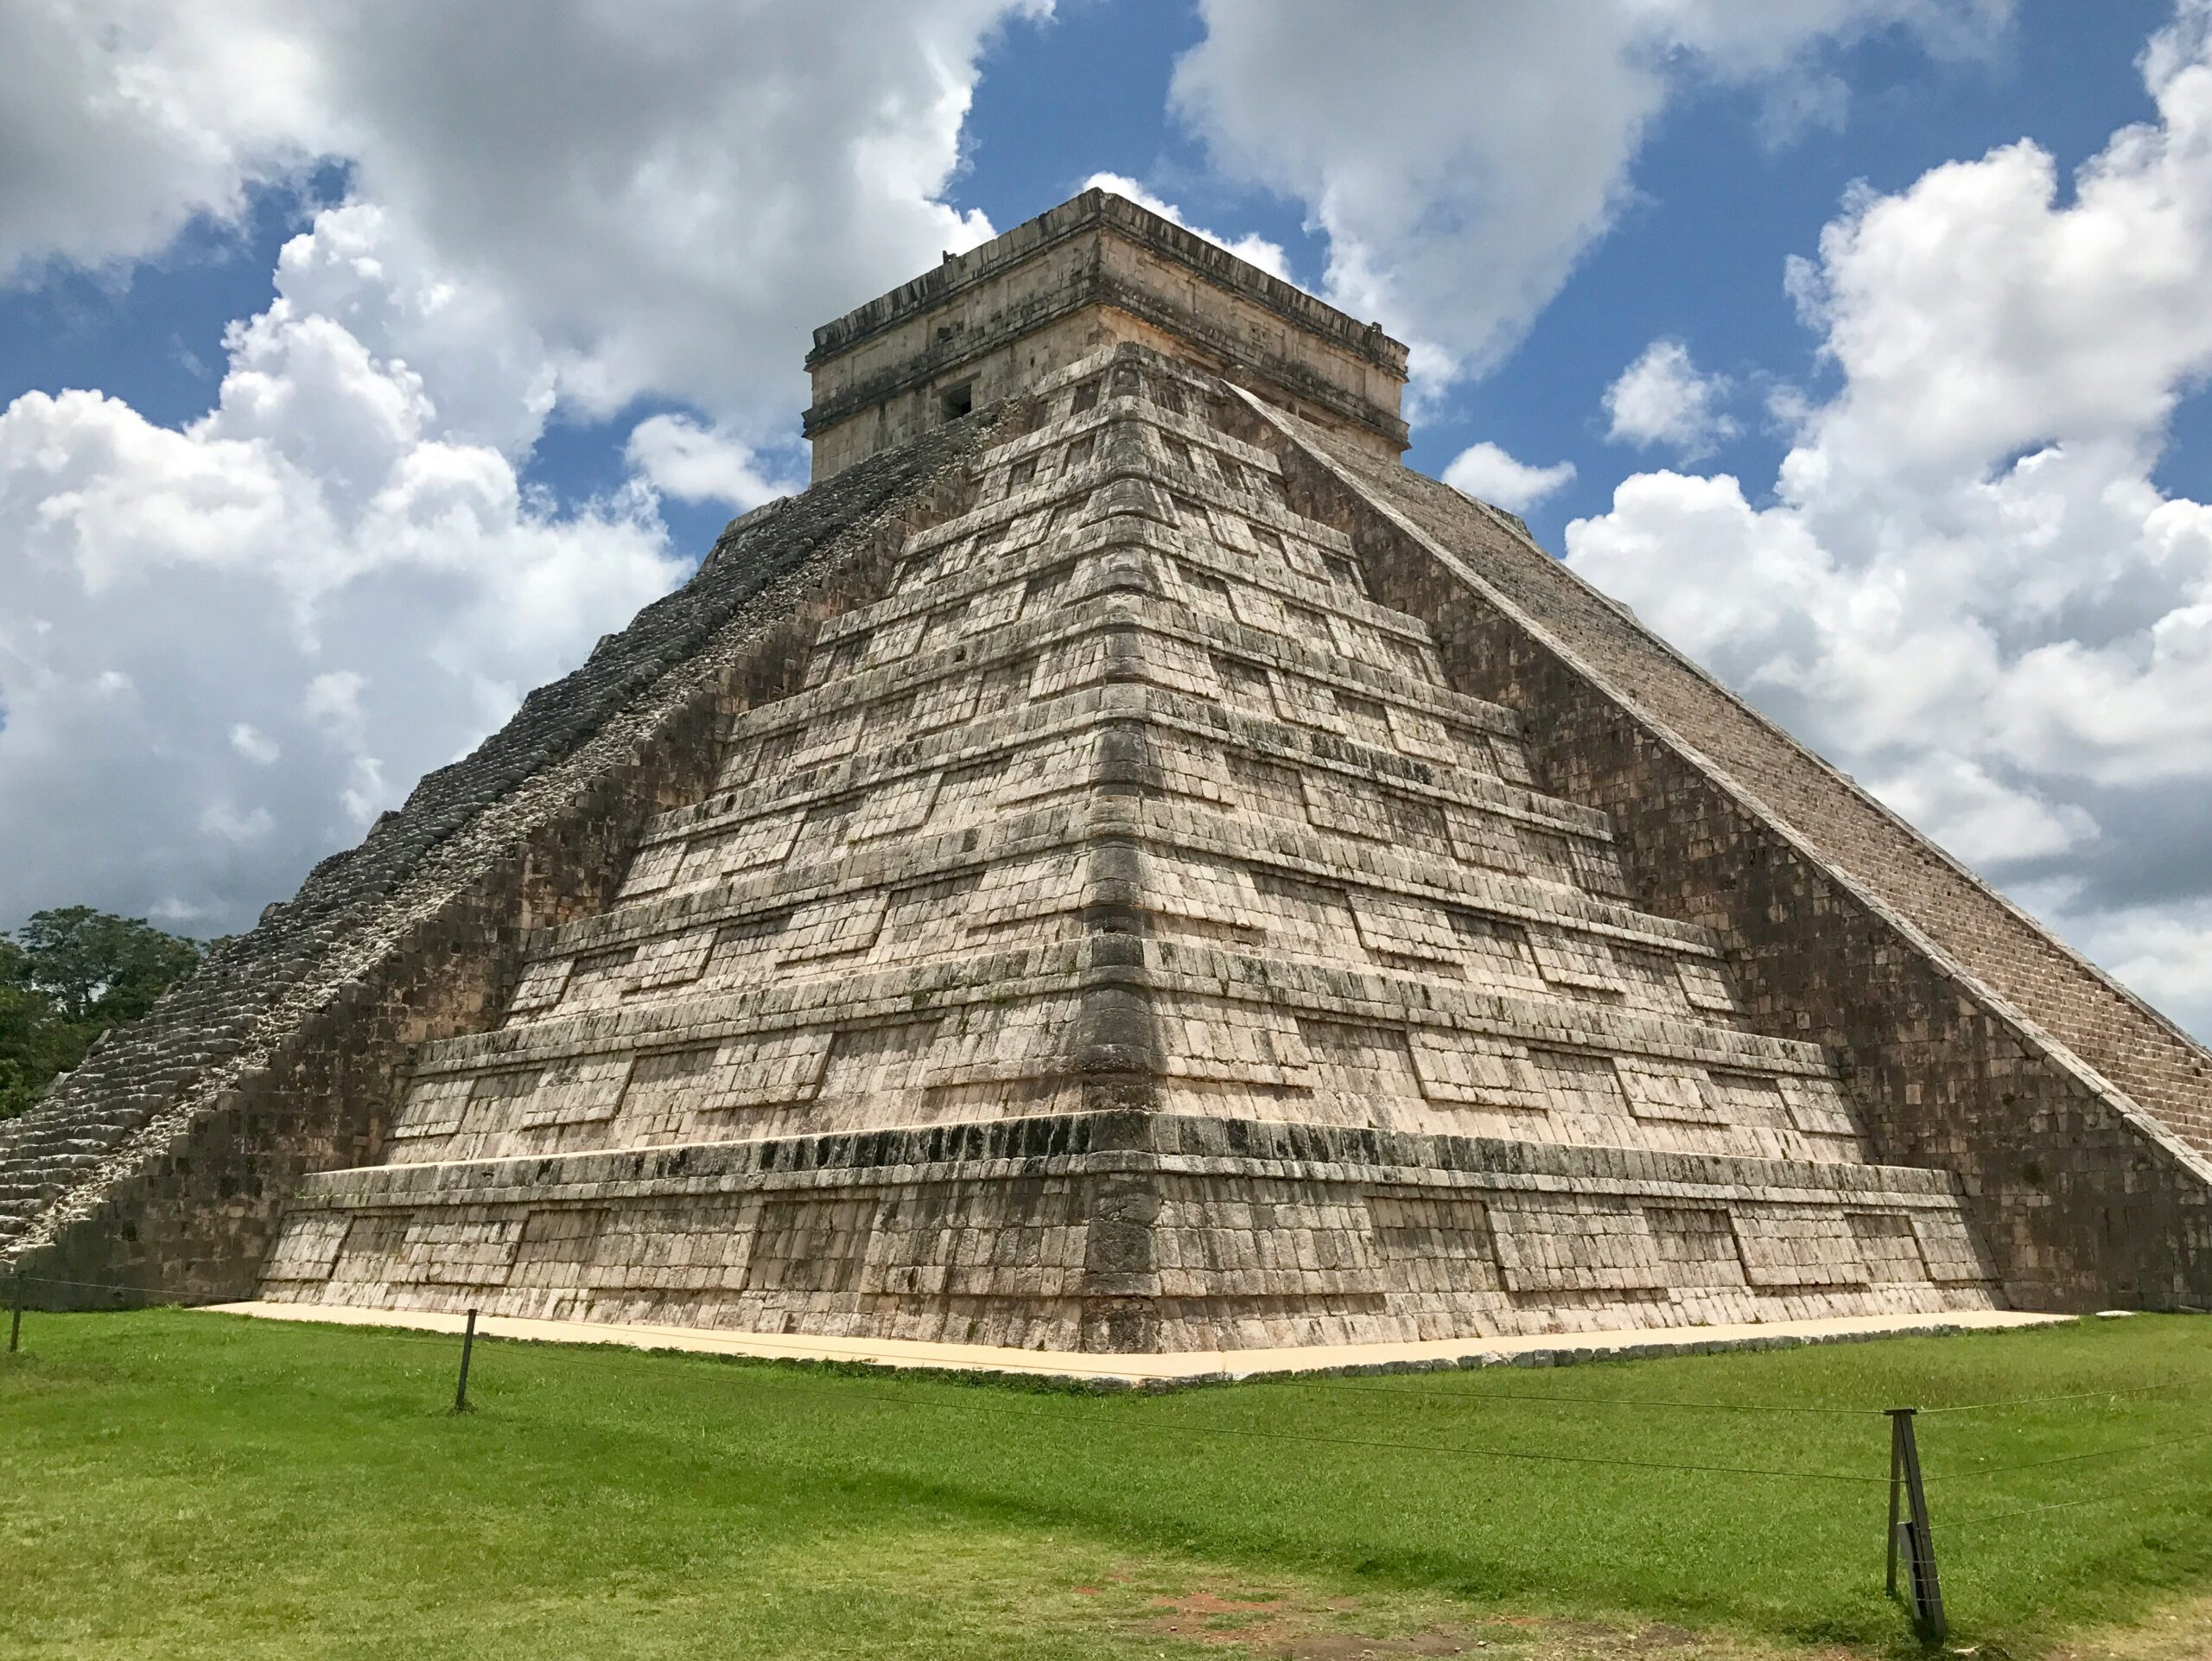 Meksyk - wyjazdy grupowe incentive travel Motywacyjne